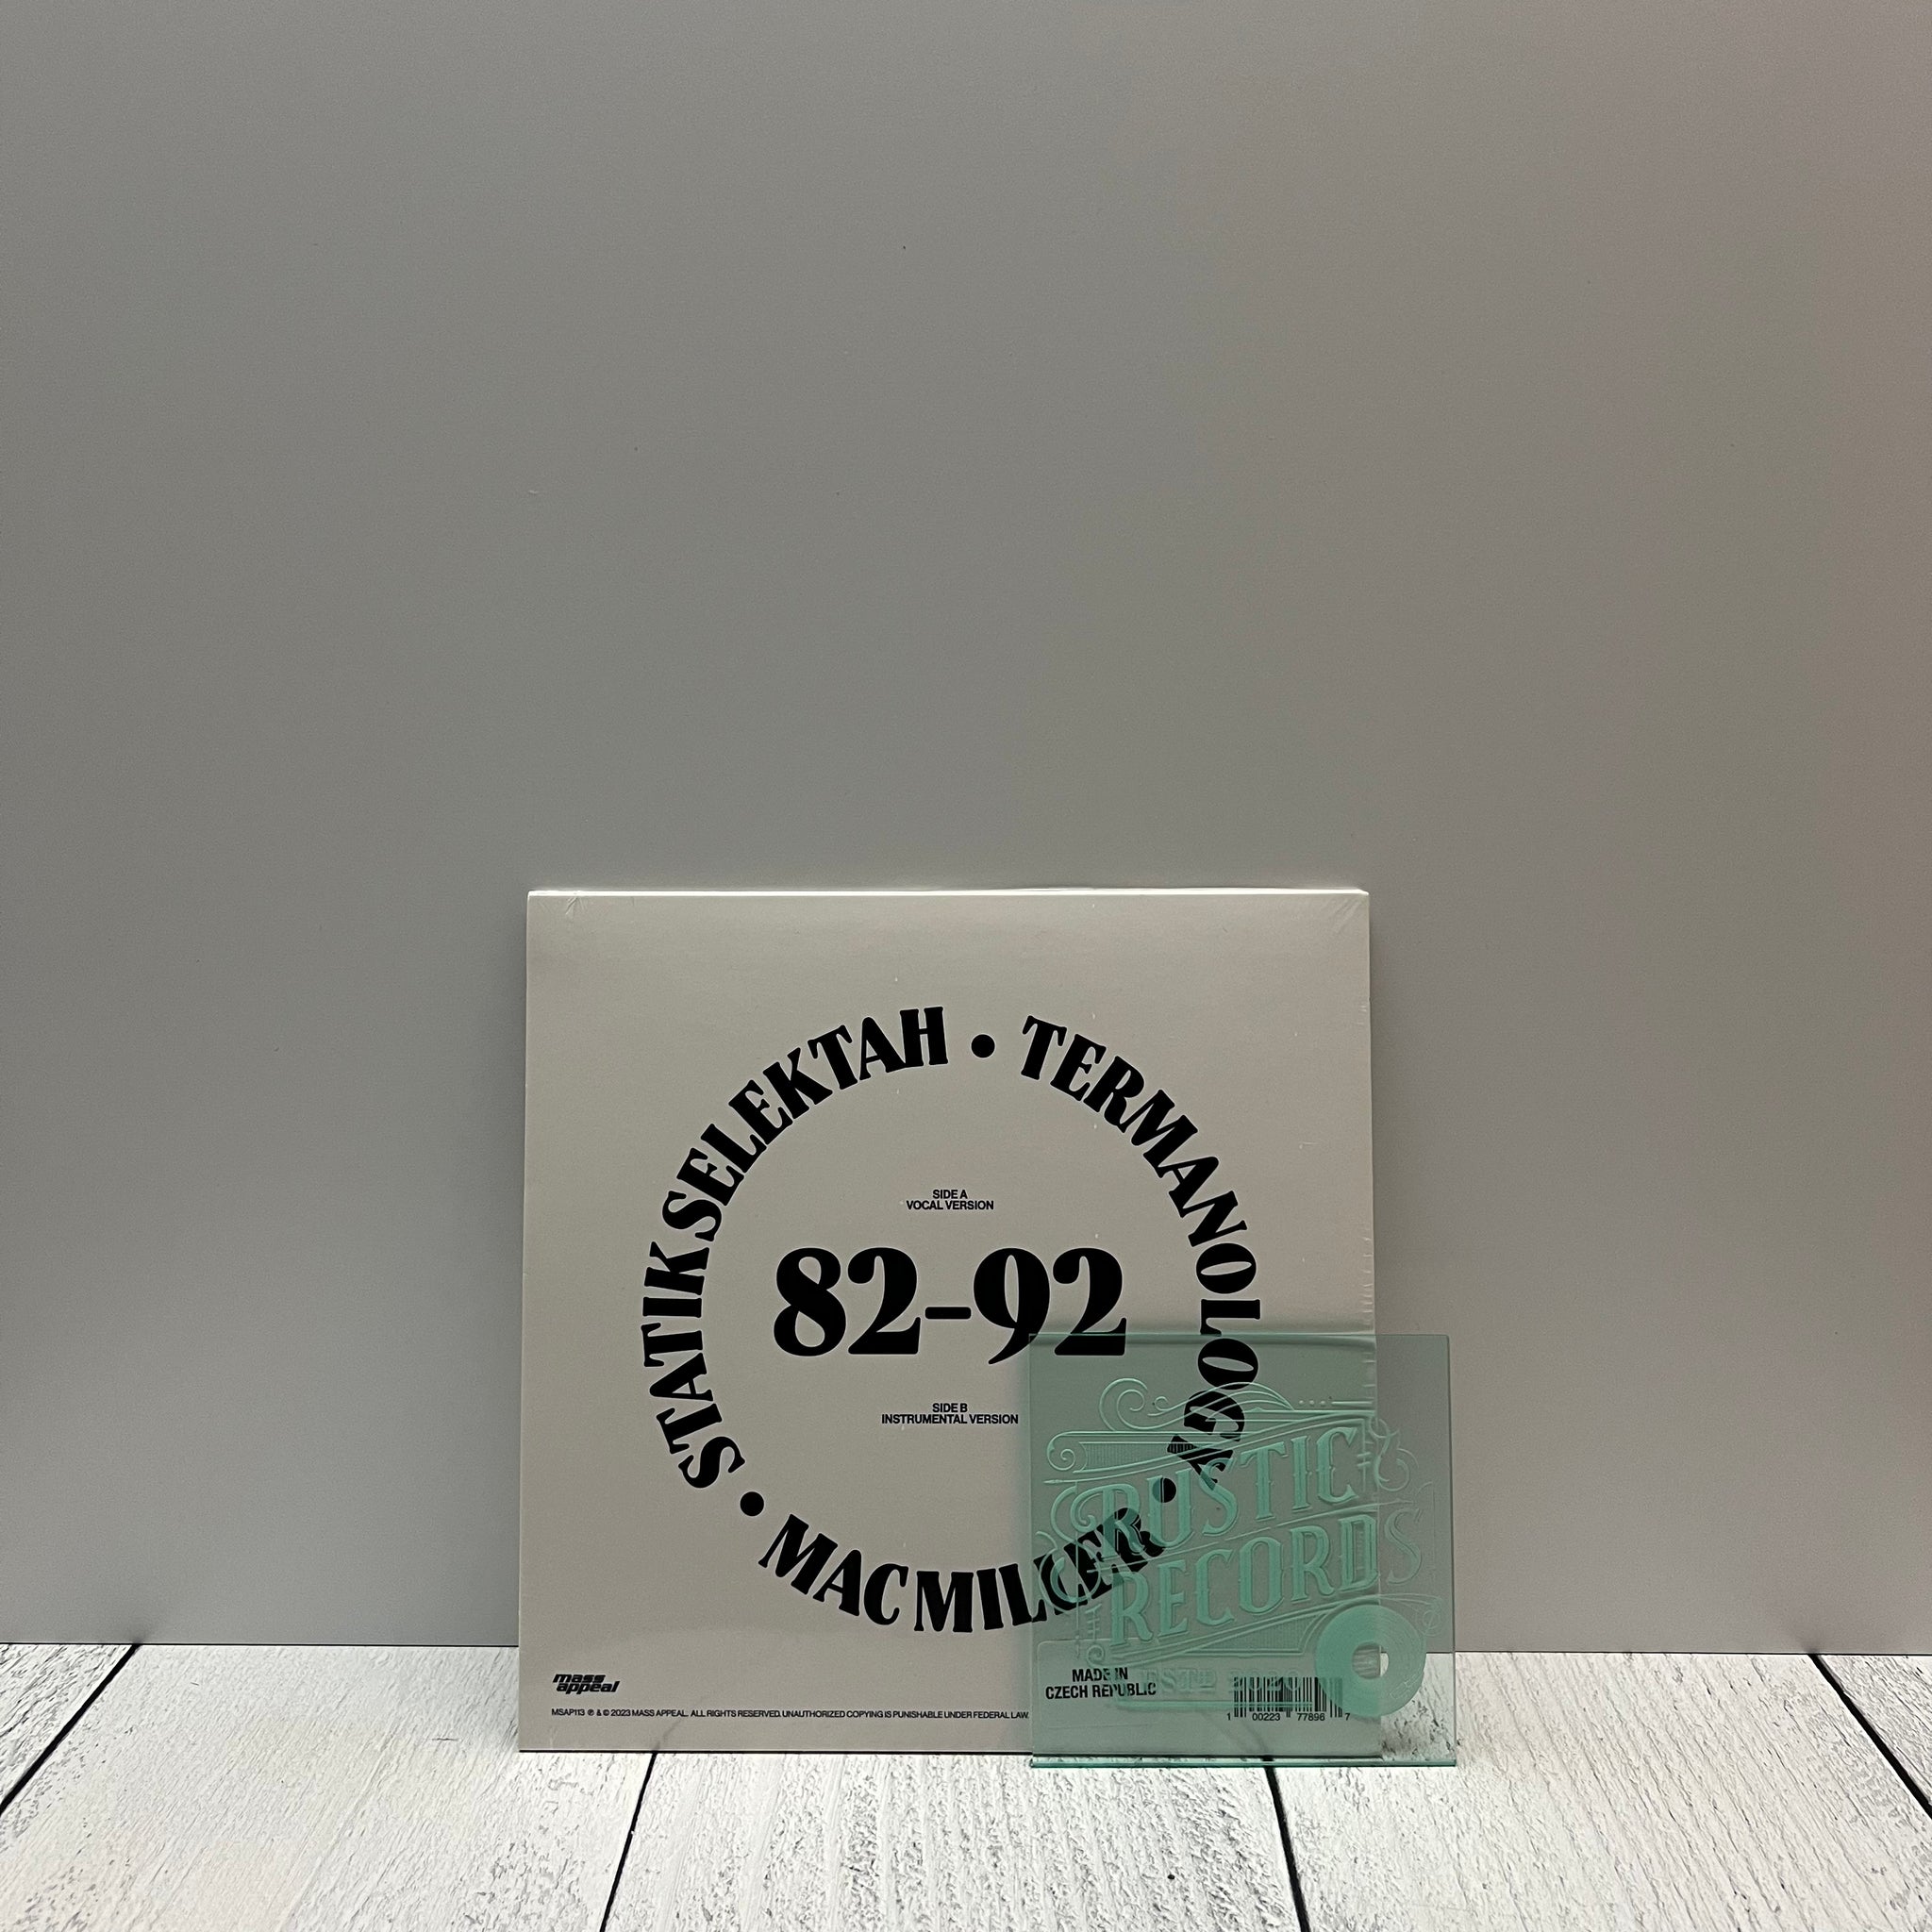 Statik Selektah / Mac Miller - 82-92 7" Single (Green Vinyl)